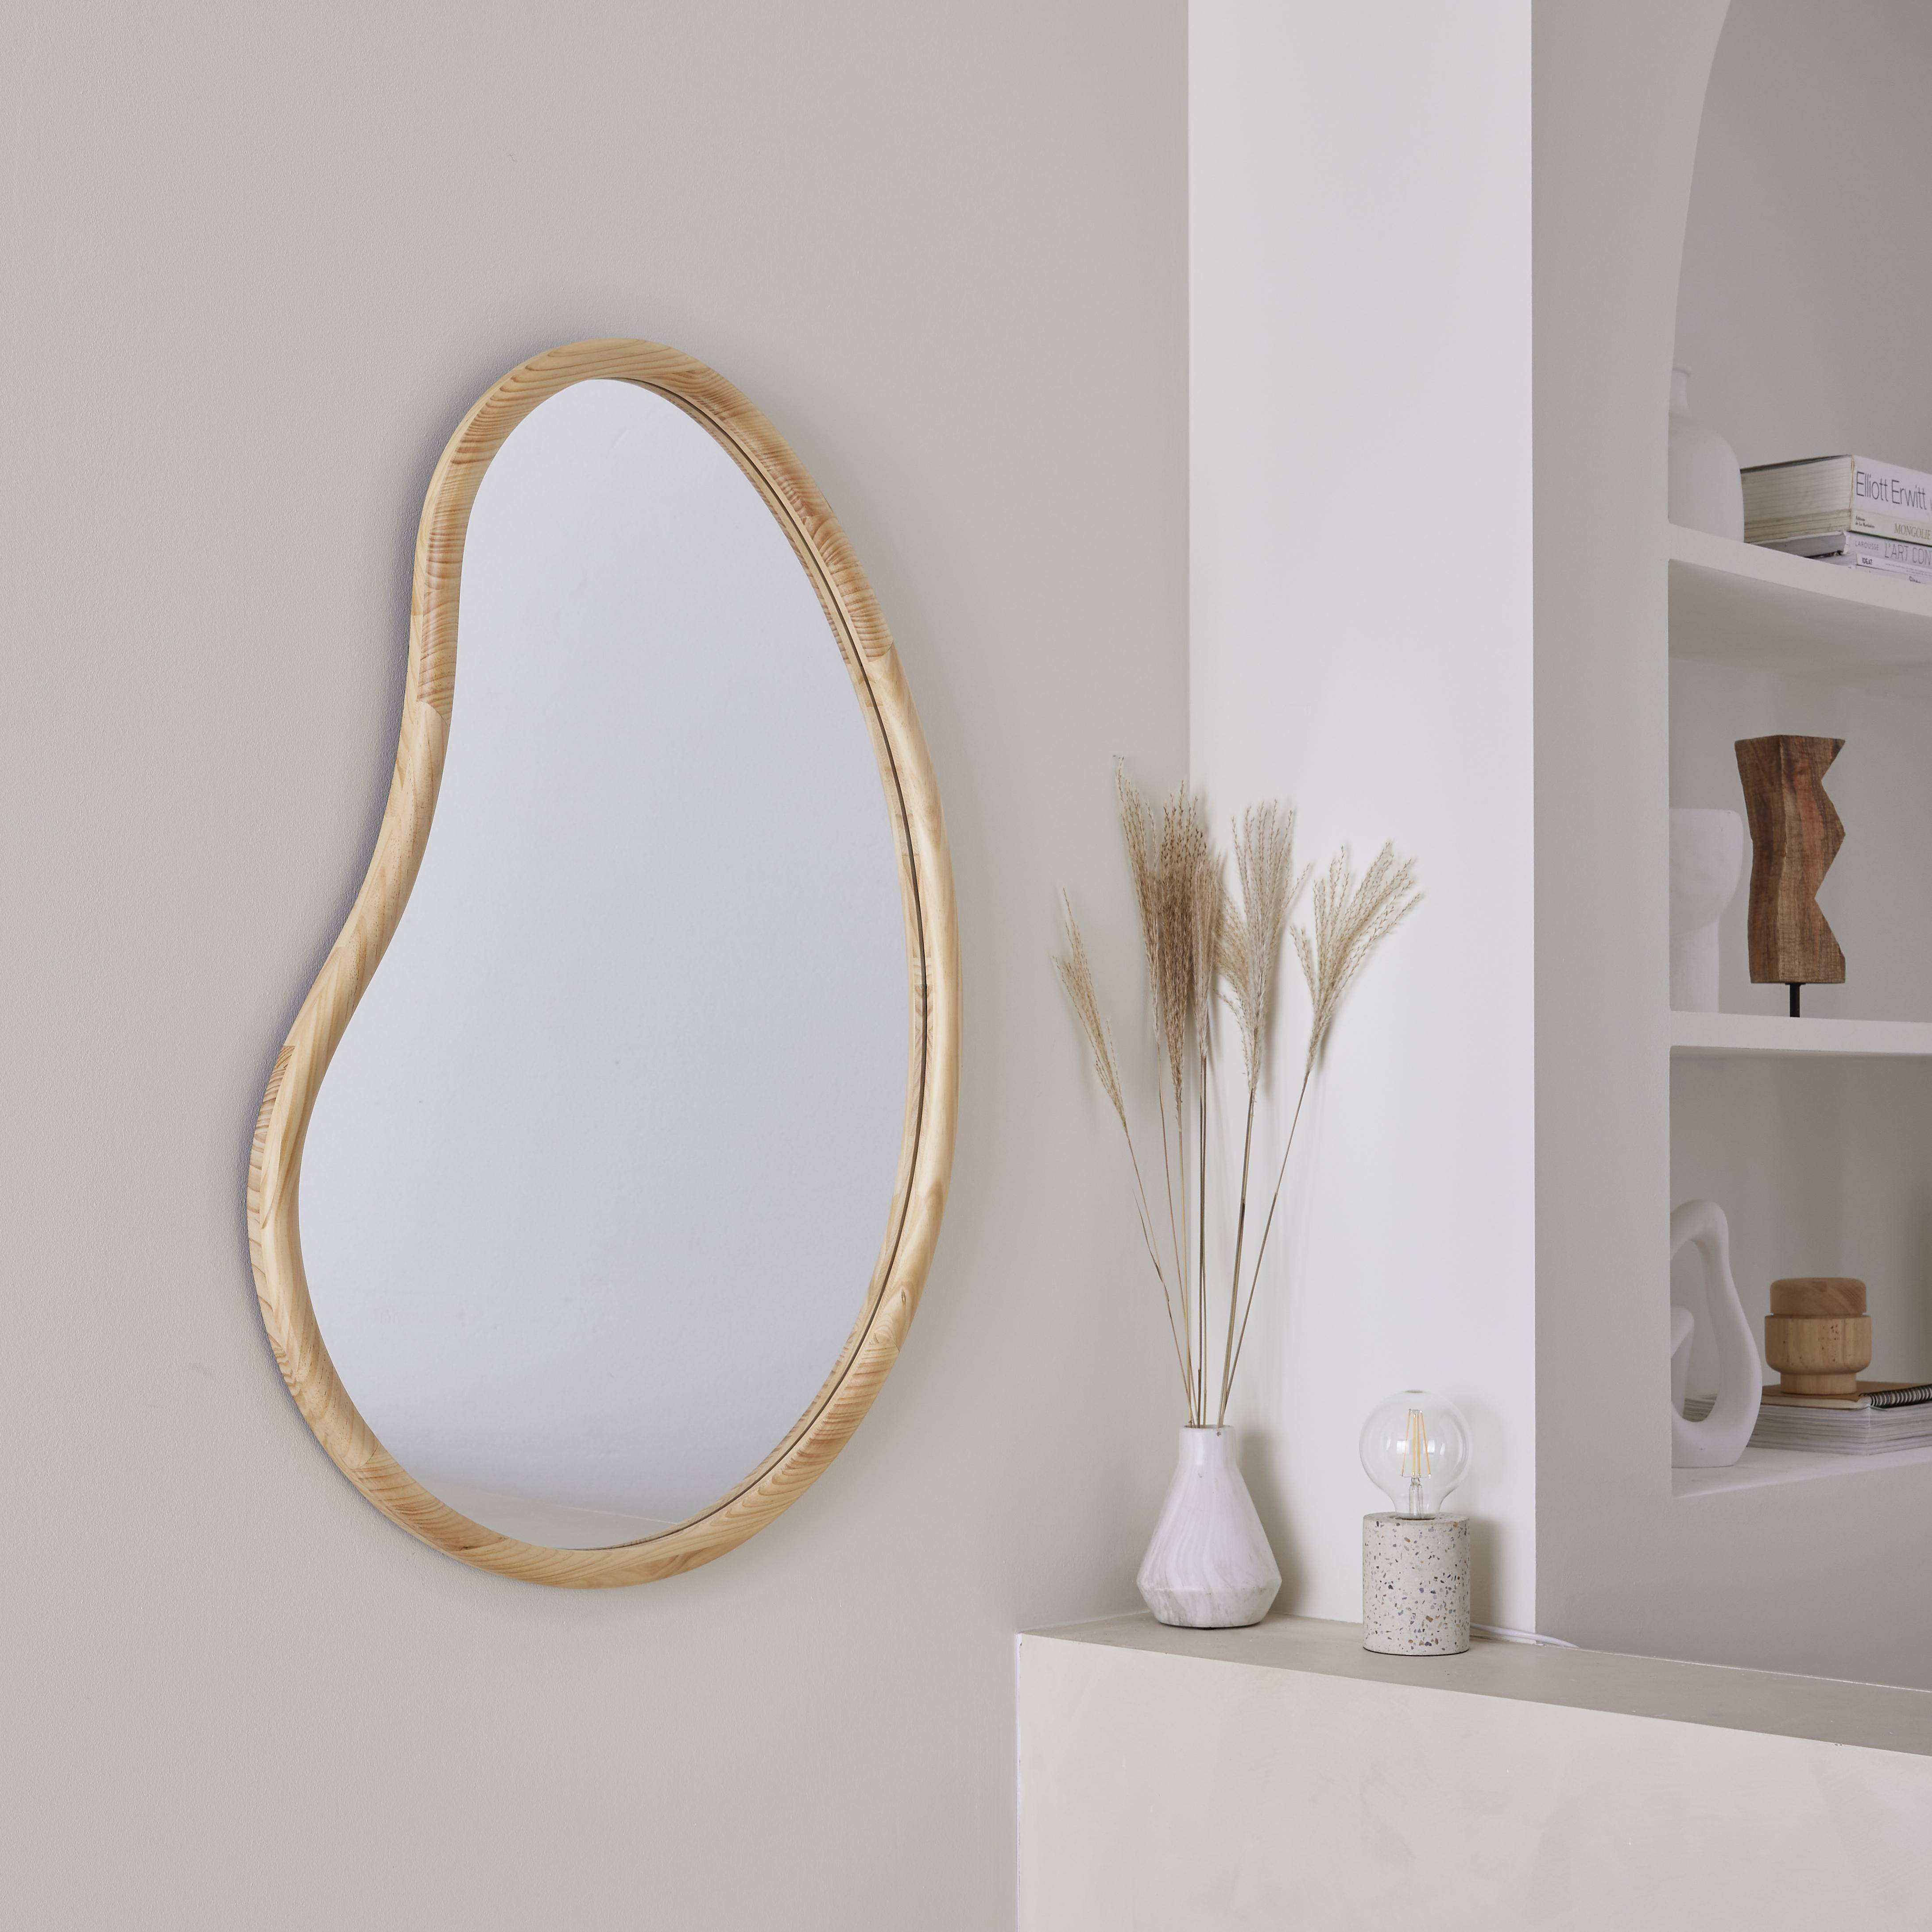 Miroir organique en bois de sapin 95cm épaisseur 3cm coloris naturel idéal entrée, chambre ou salle de bain Photo1